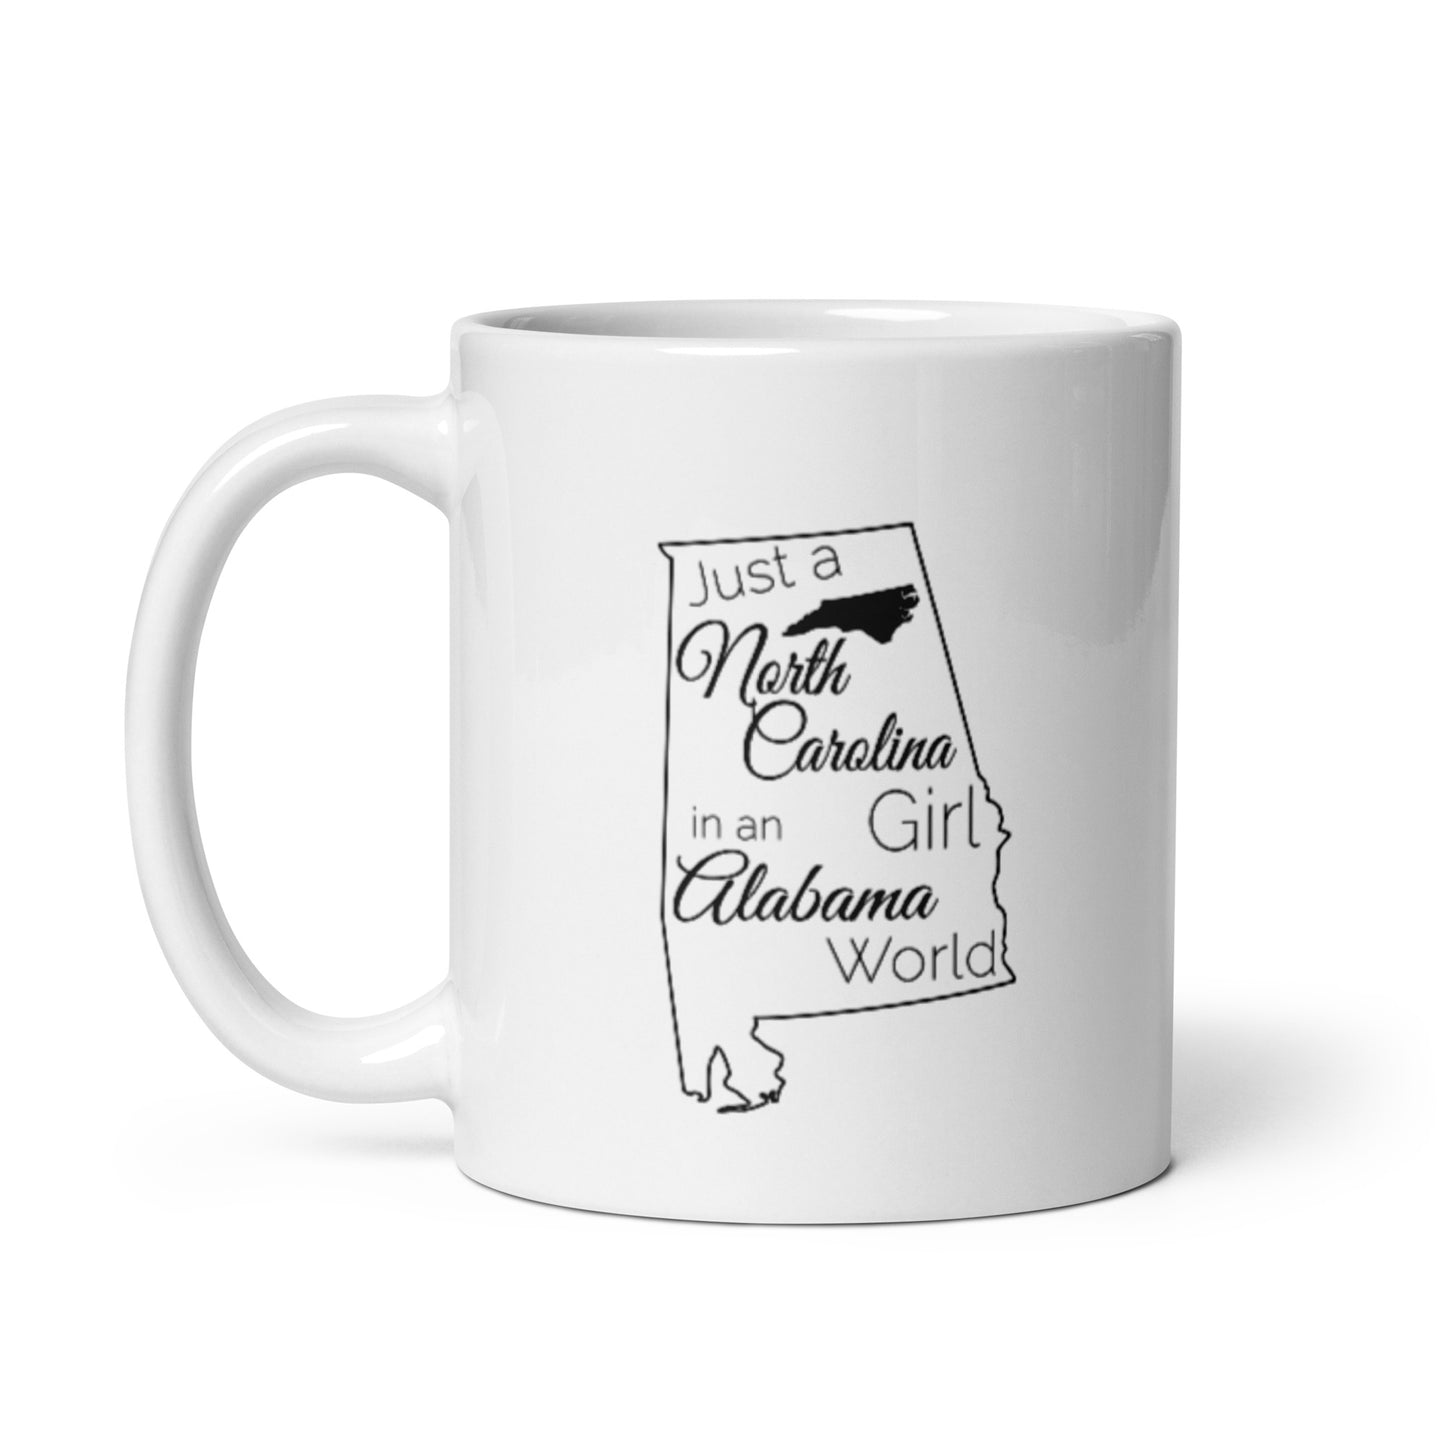 Just a North Carolina Girl in an Alabama World White glossy mug